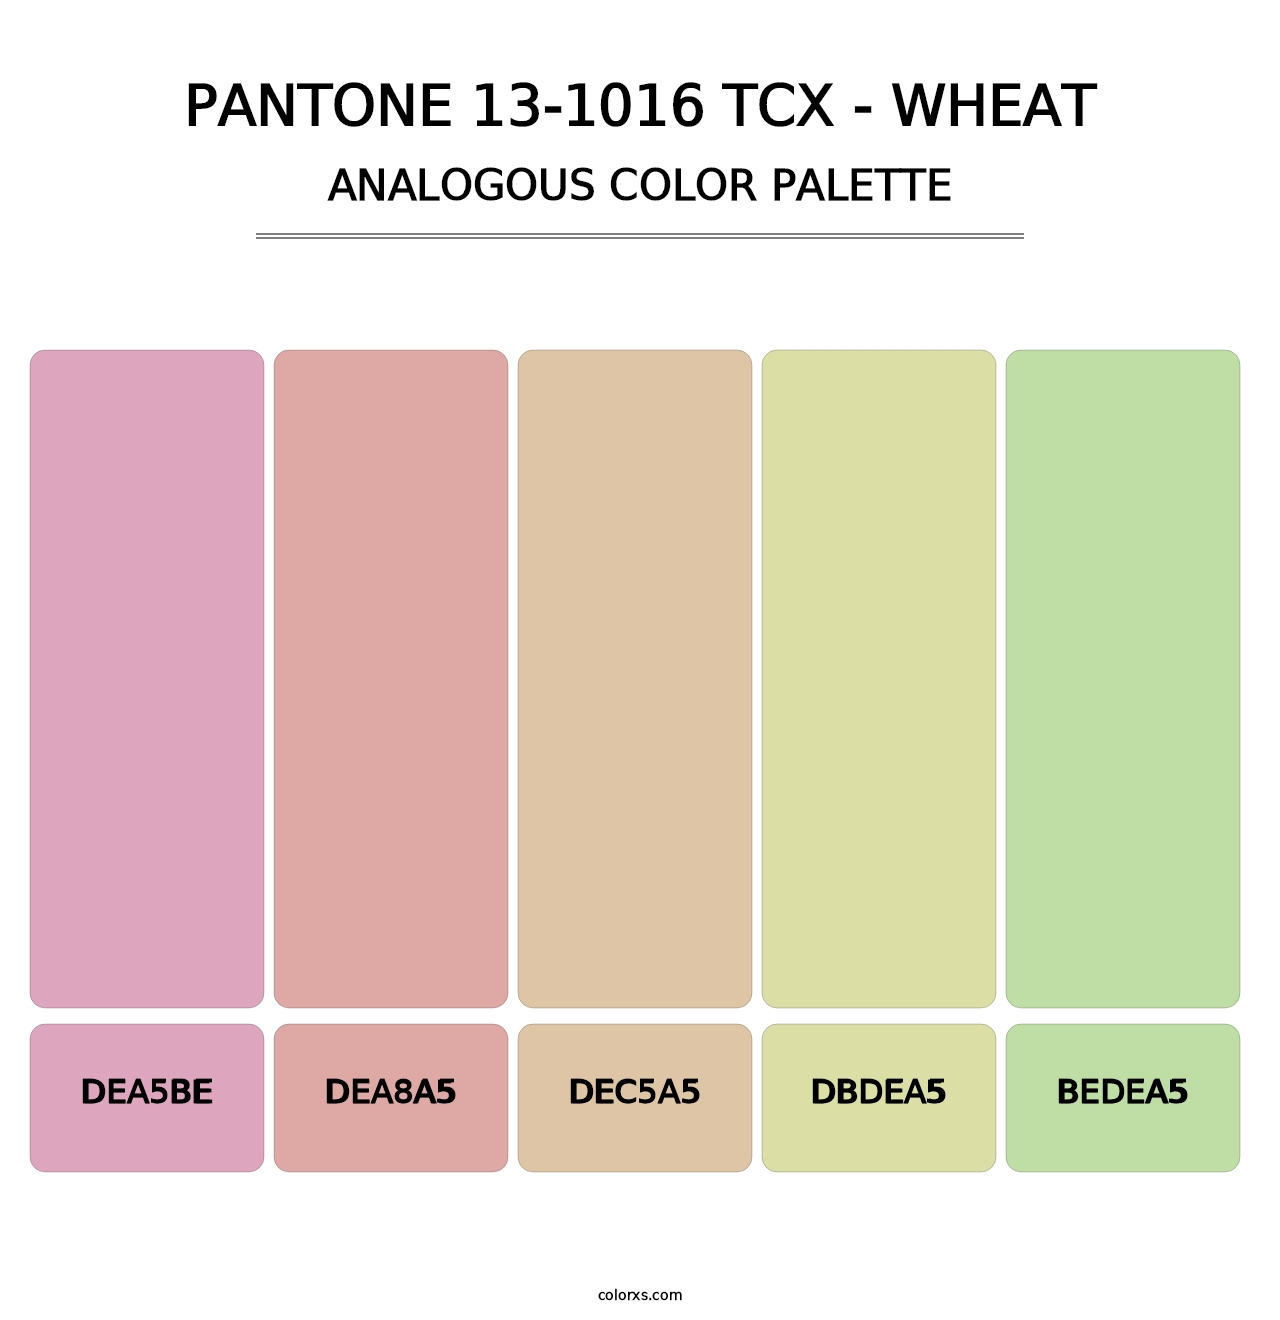 PANTONE 13-1016 TCX - Wheat - Analogous Color Palette